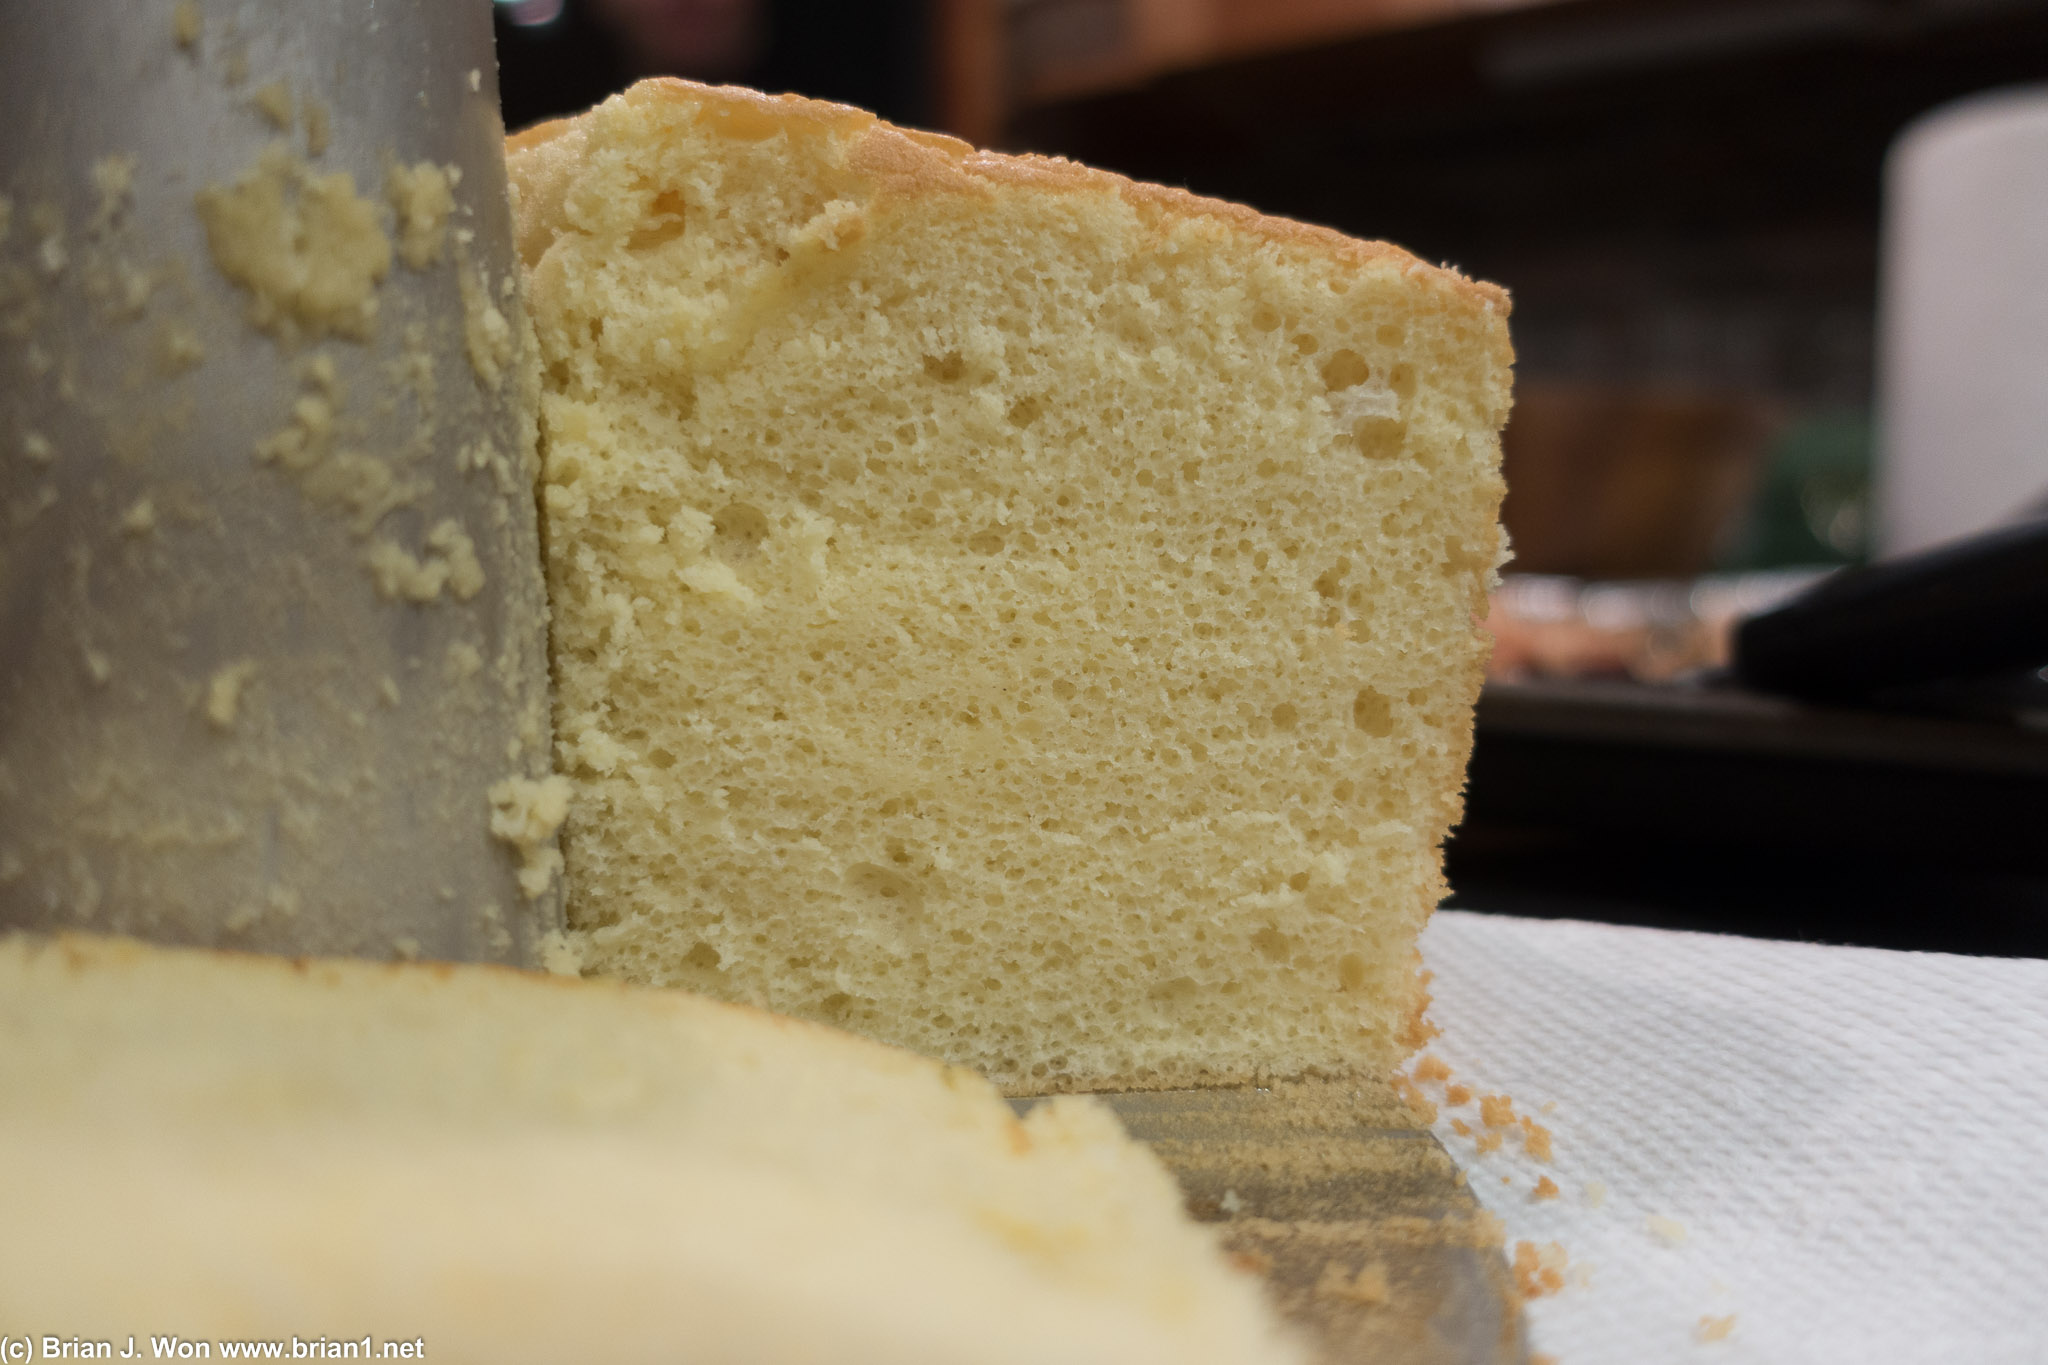 Sponge cake cross-section.